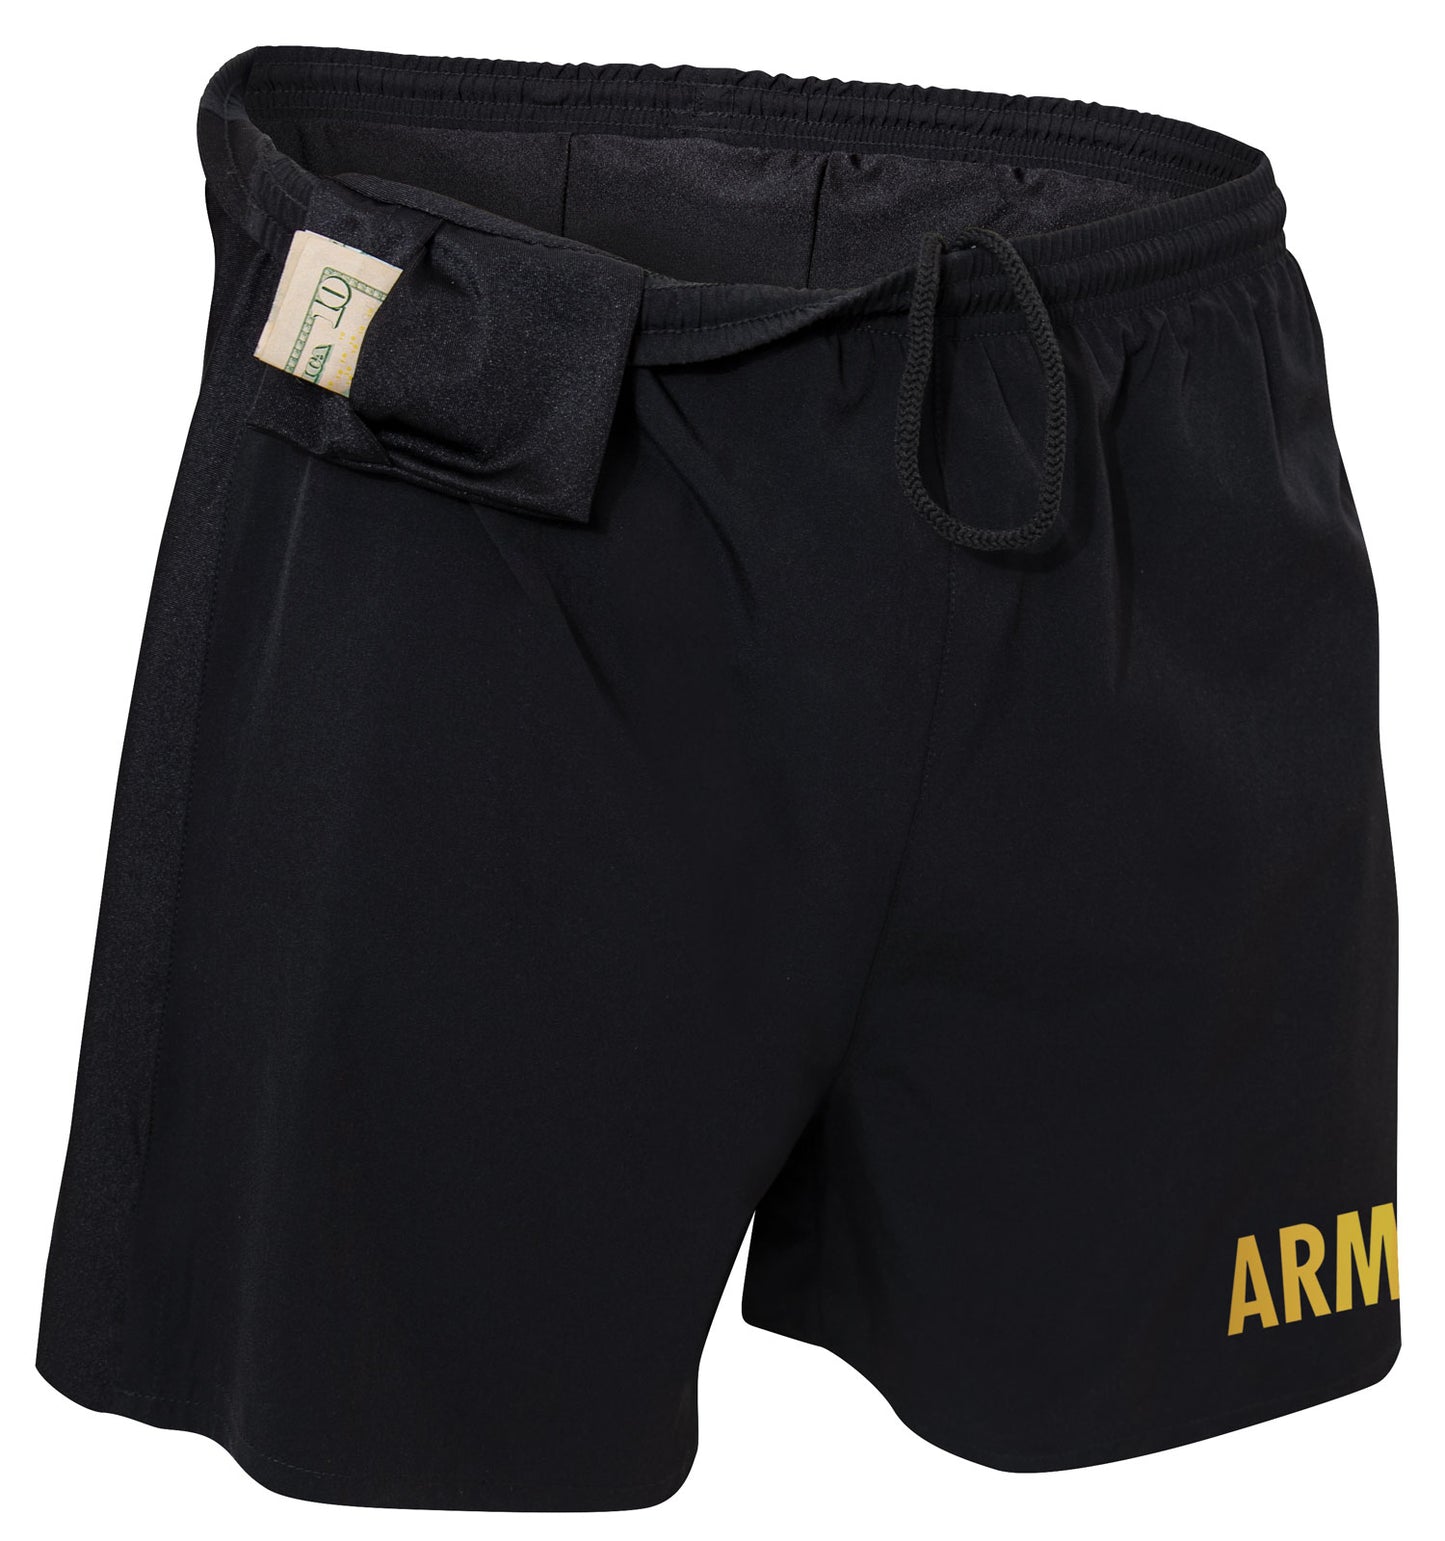 Black & Gold ARMY Physical Training Shorts - Rothco Mens PT Shorts